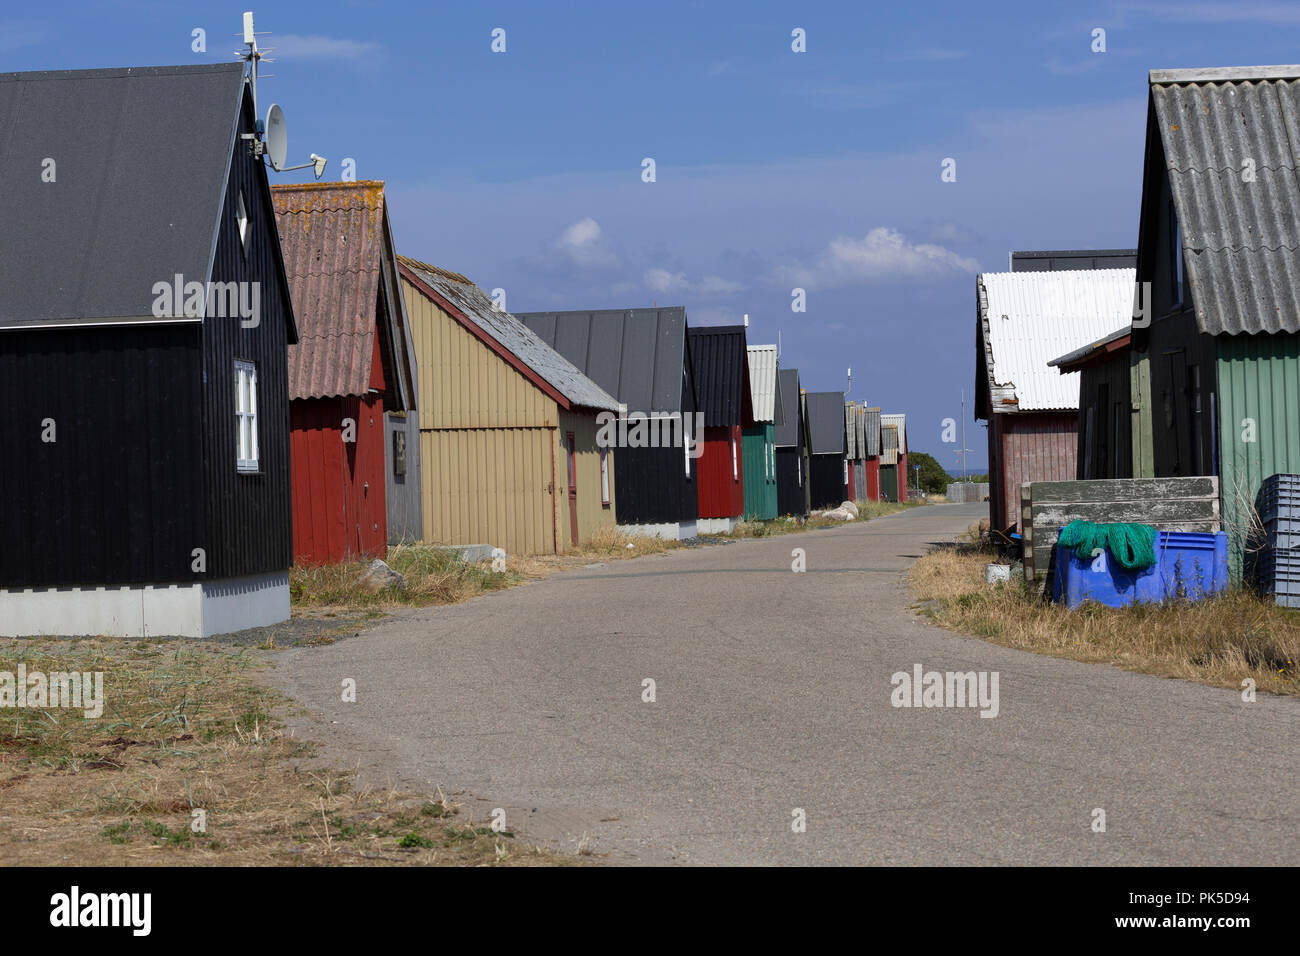 À l'ancien port de pêche 'Gammel Havn' dans Ebeltoft, Danemark, a été de construire des cabines. Au départ, il y avait des cabines pour stocker Fishermen's Banque D'Images